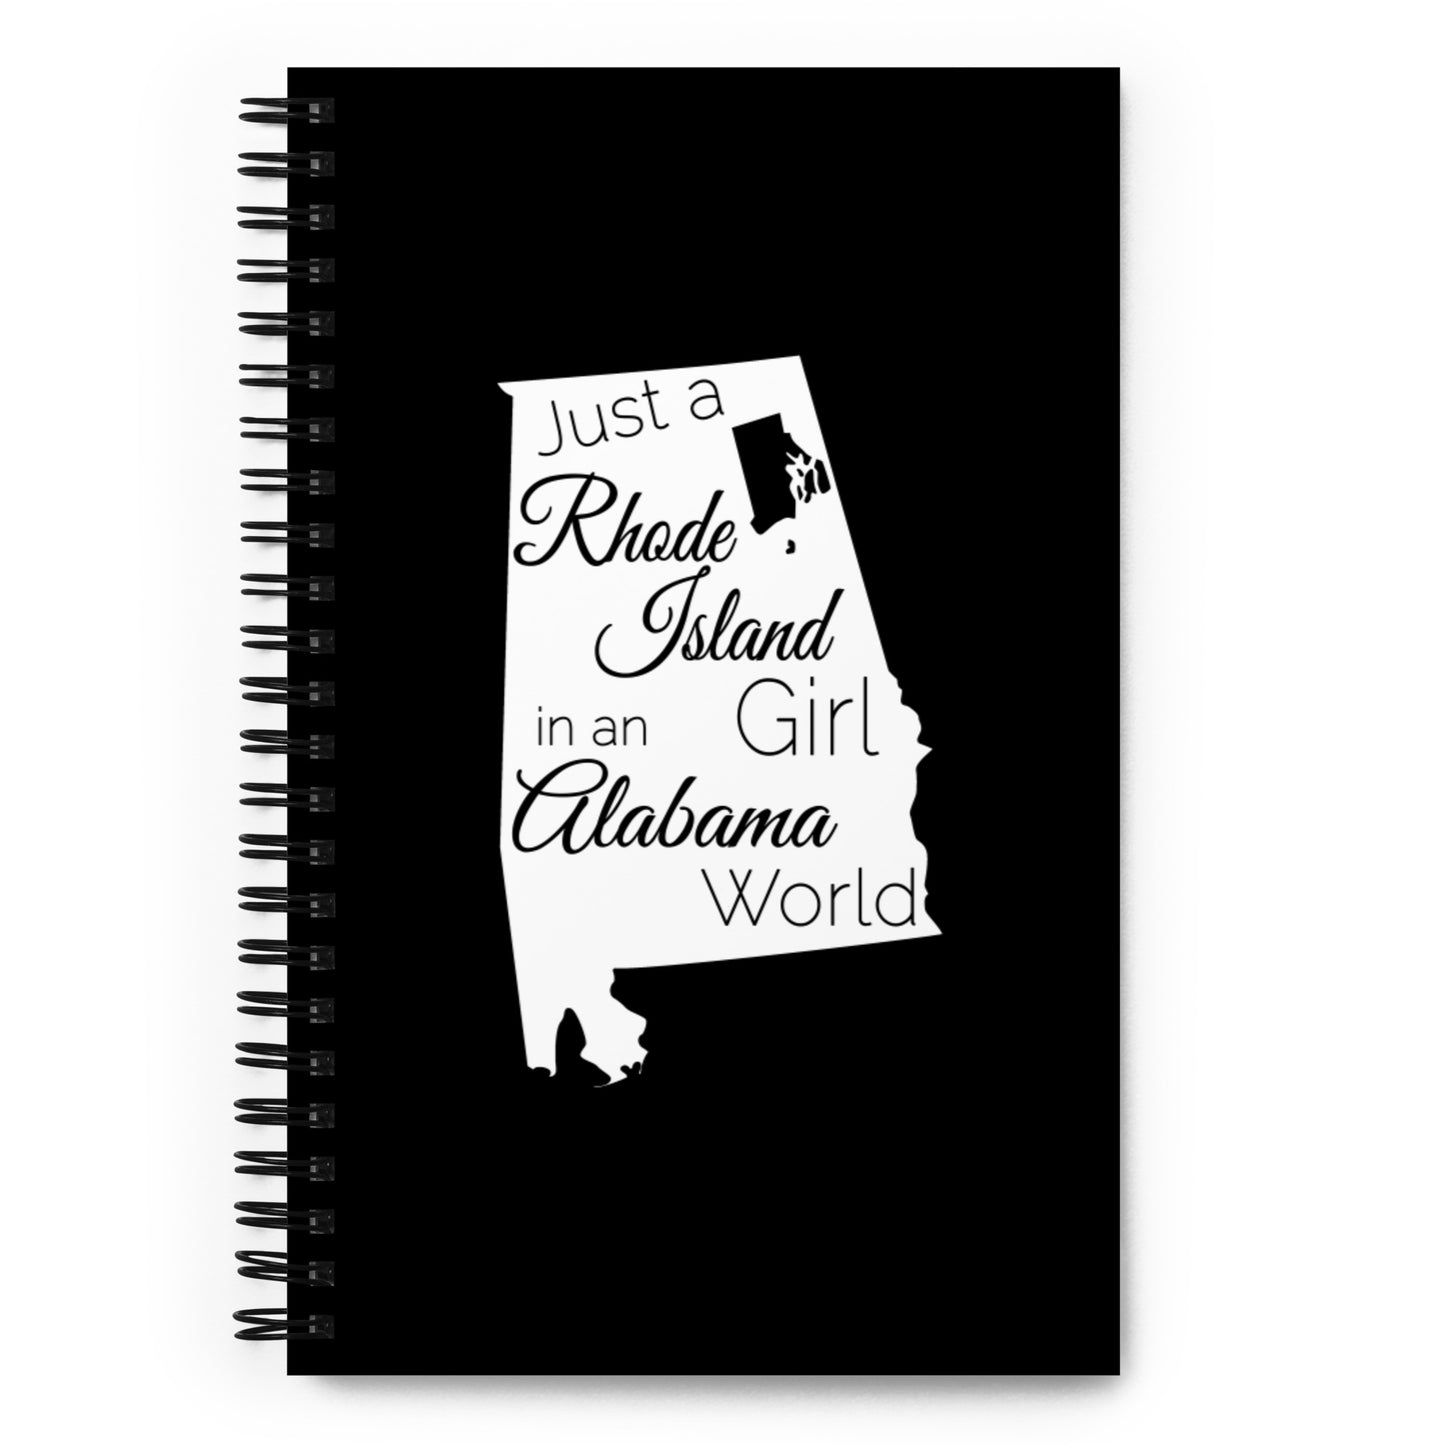 Just a Rhode Island Girl in an Alabama World Spiral notebook